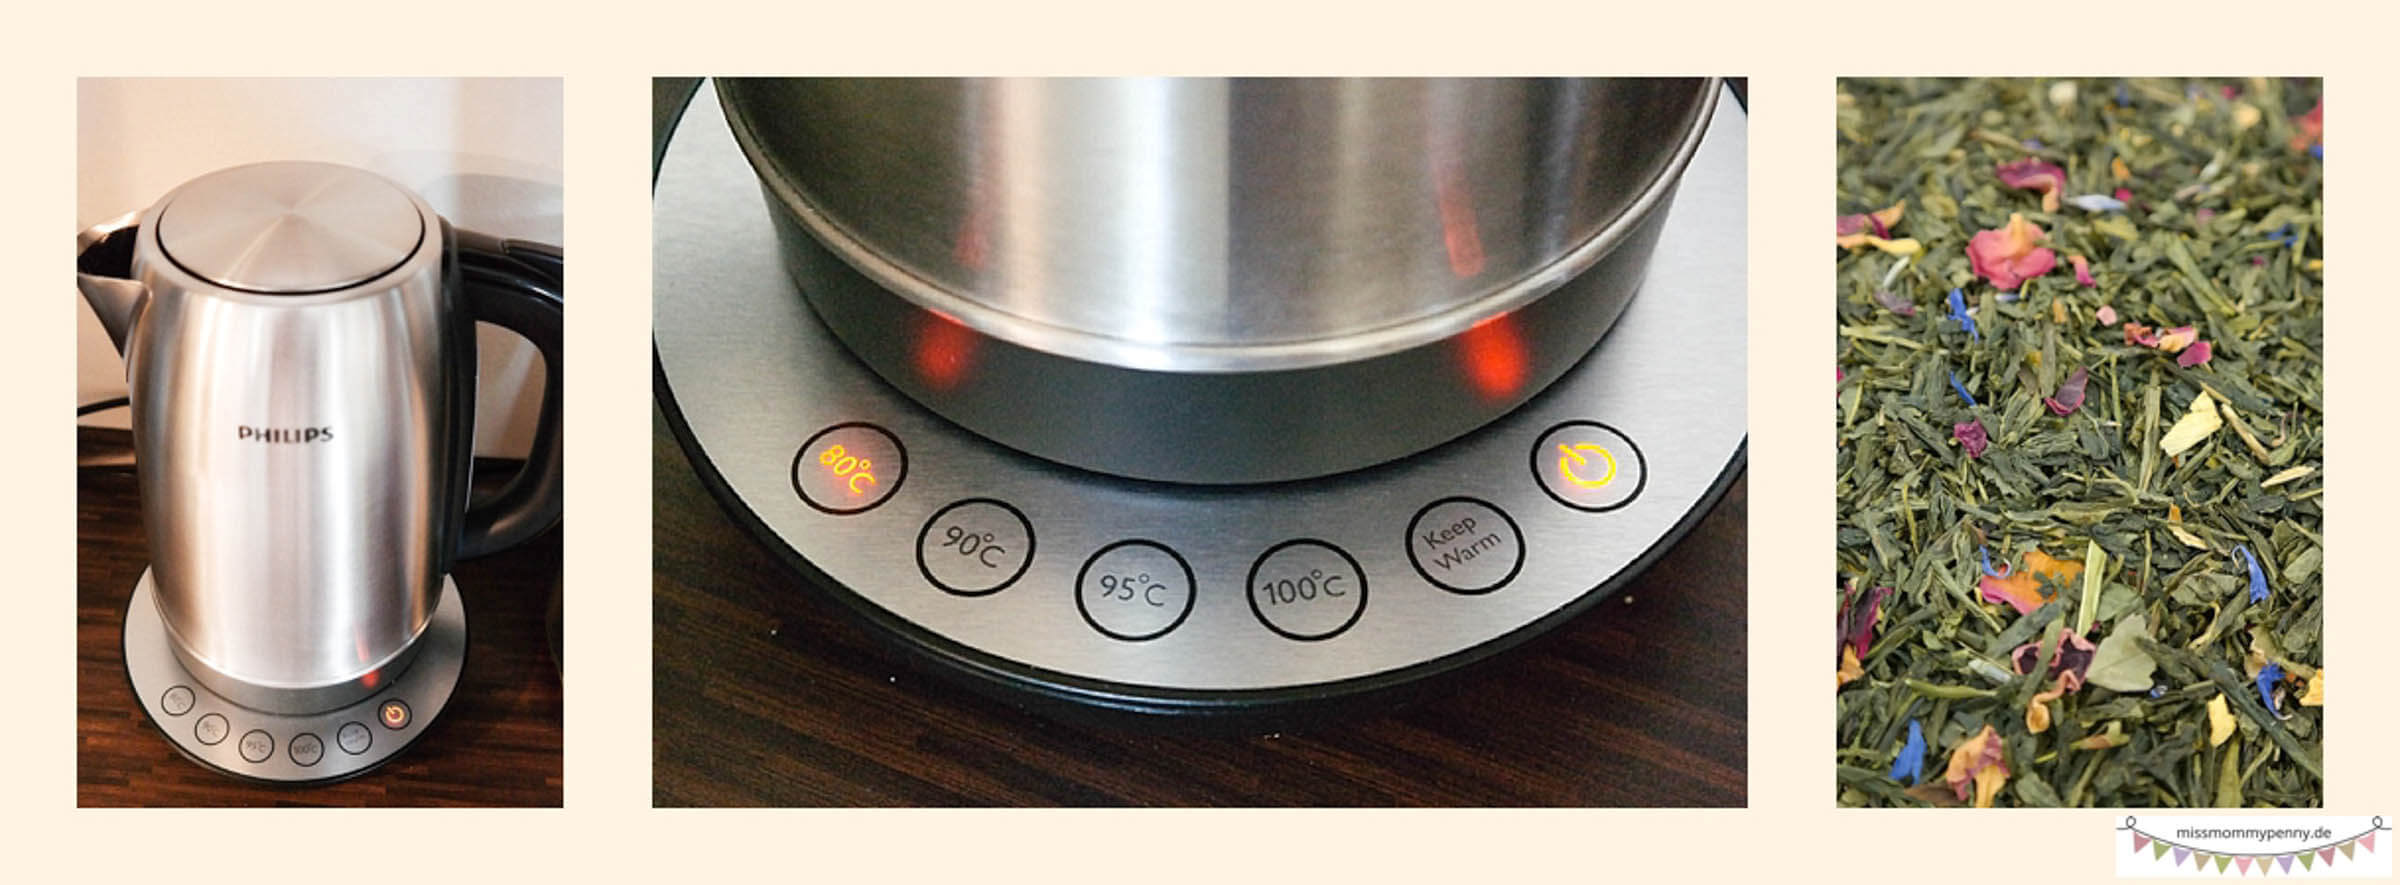 Philips Wasserkocher mit Temperaturregler